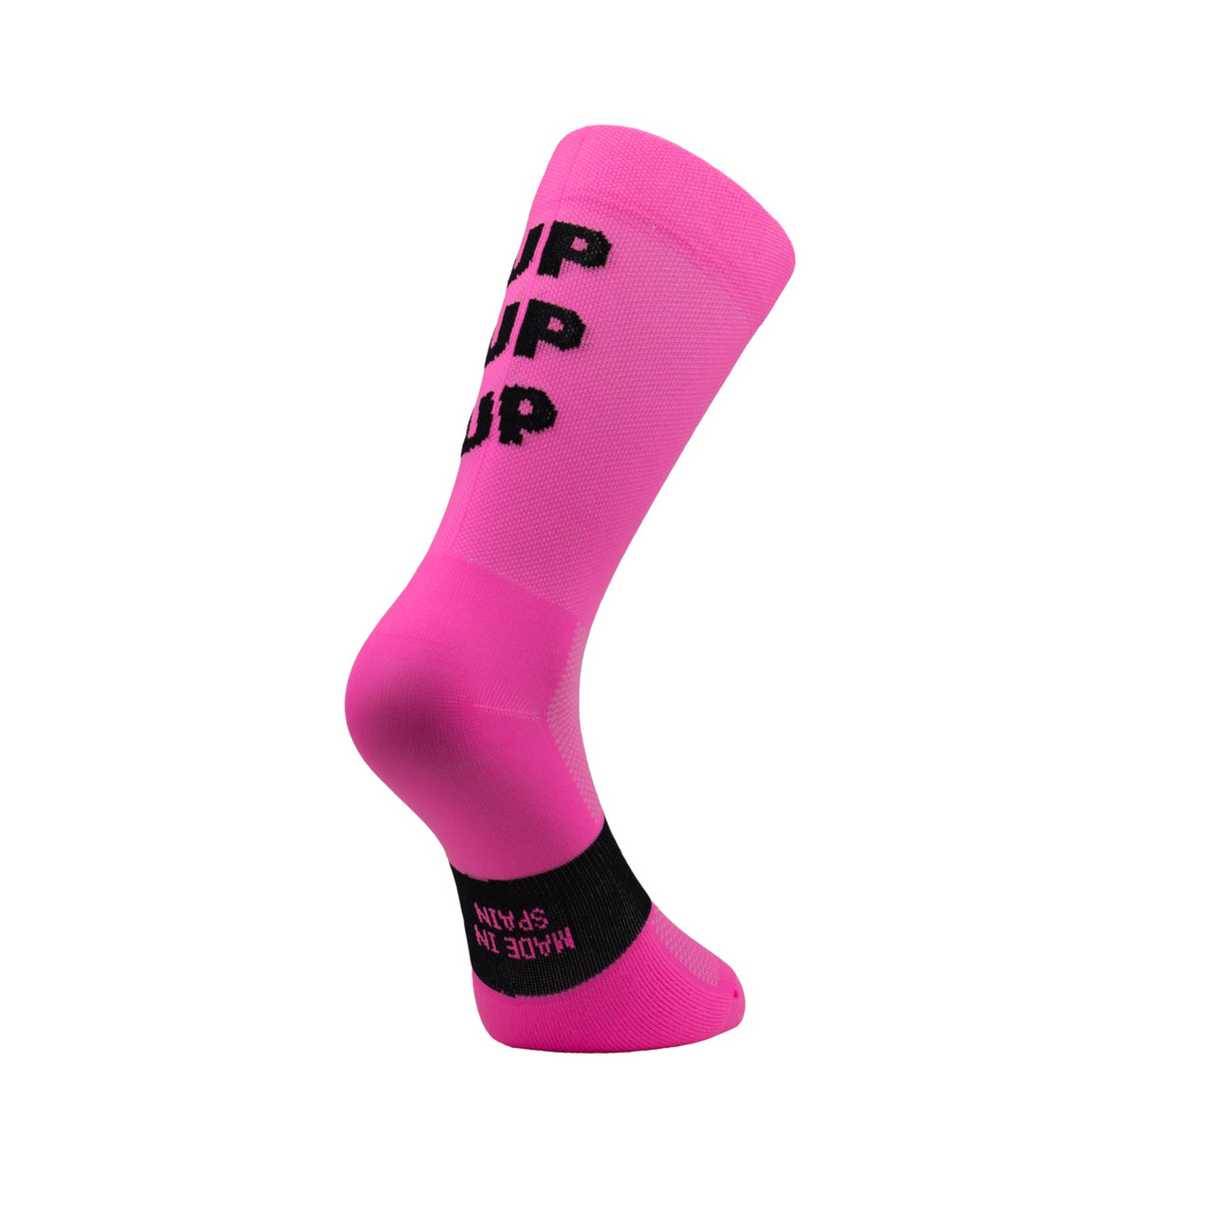 Sporcks Up Up Up Pink Cycling Socks